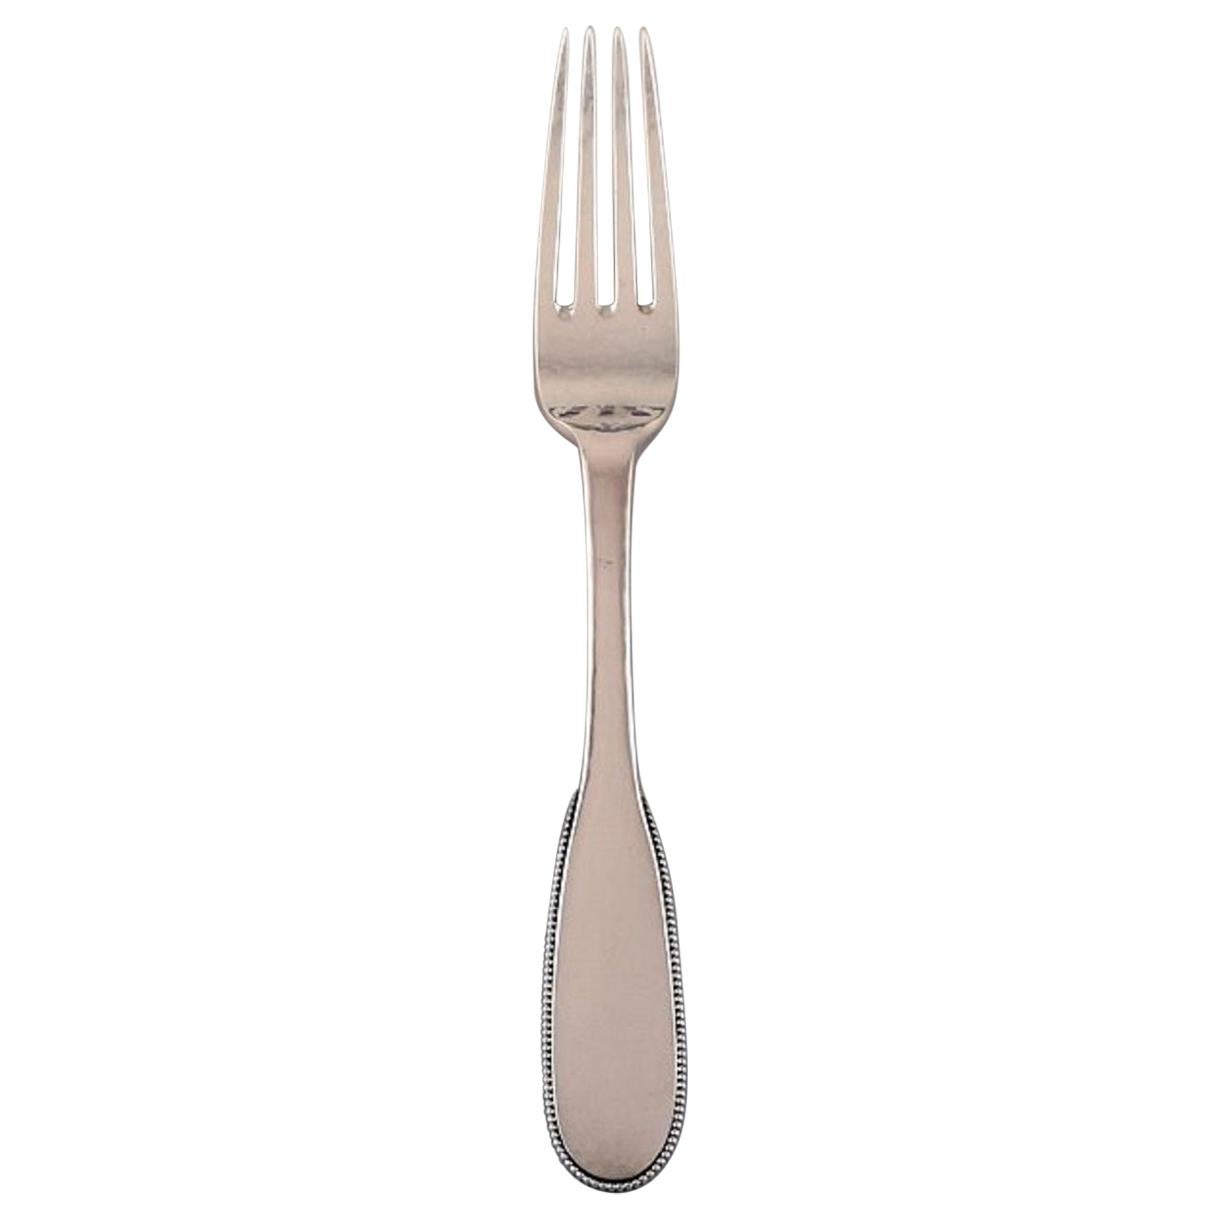 Evald Nielsen Number 14 Lunch Fork in Hammered Silver, 1920s For Sale